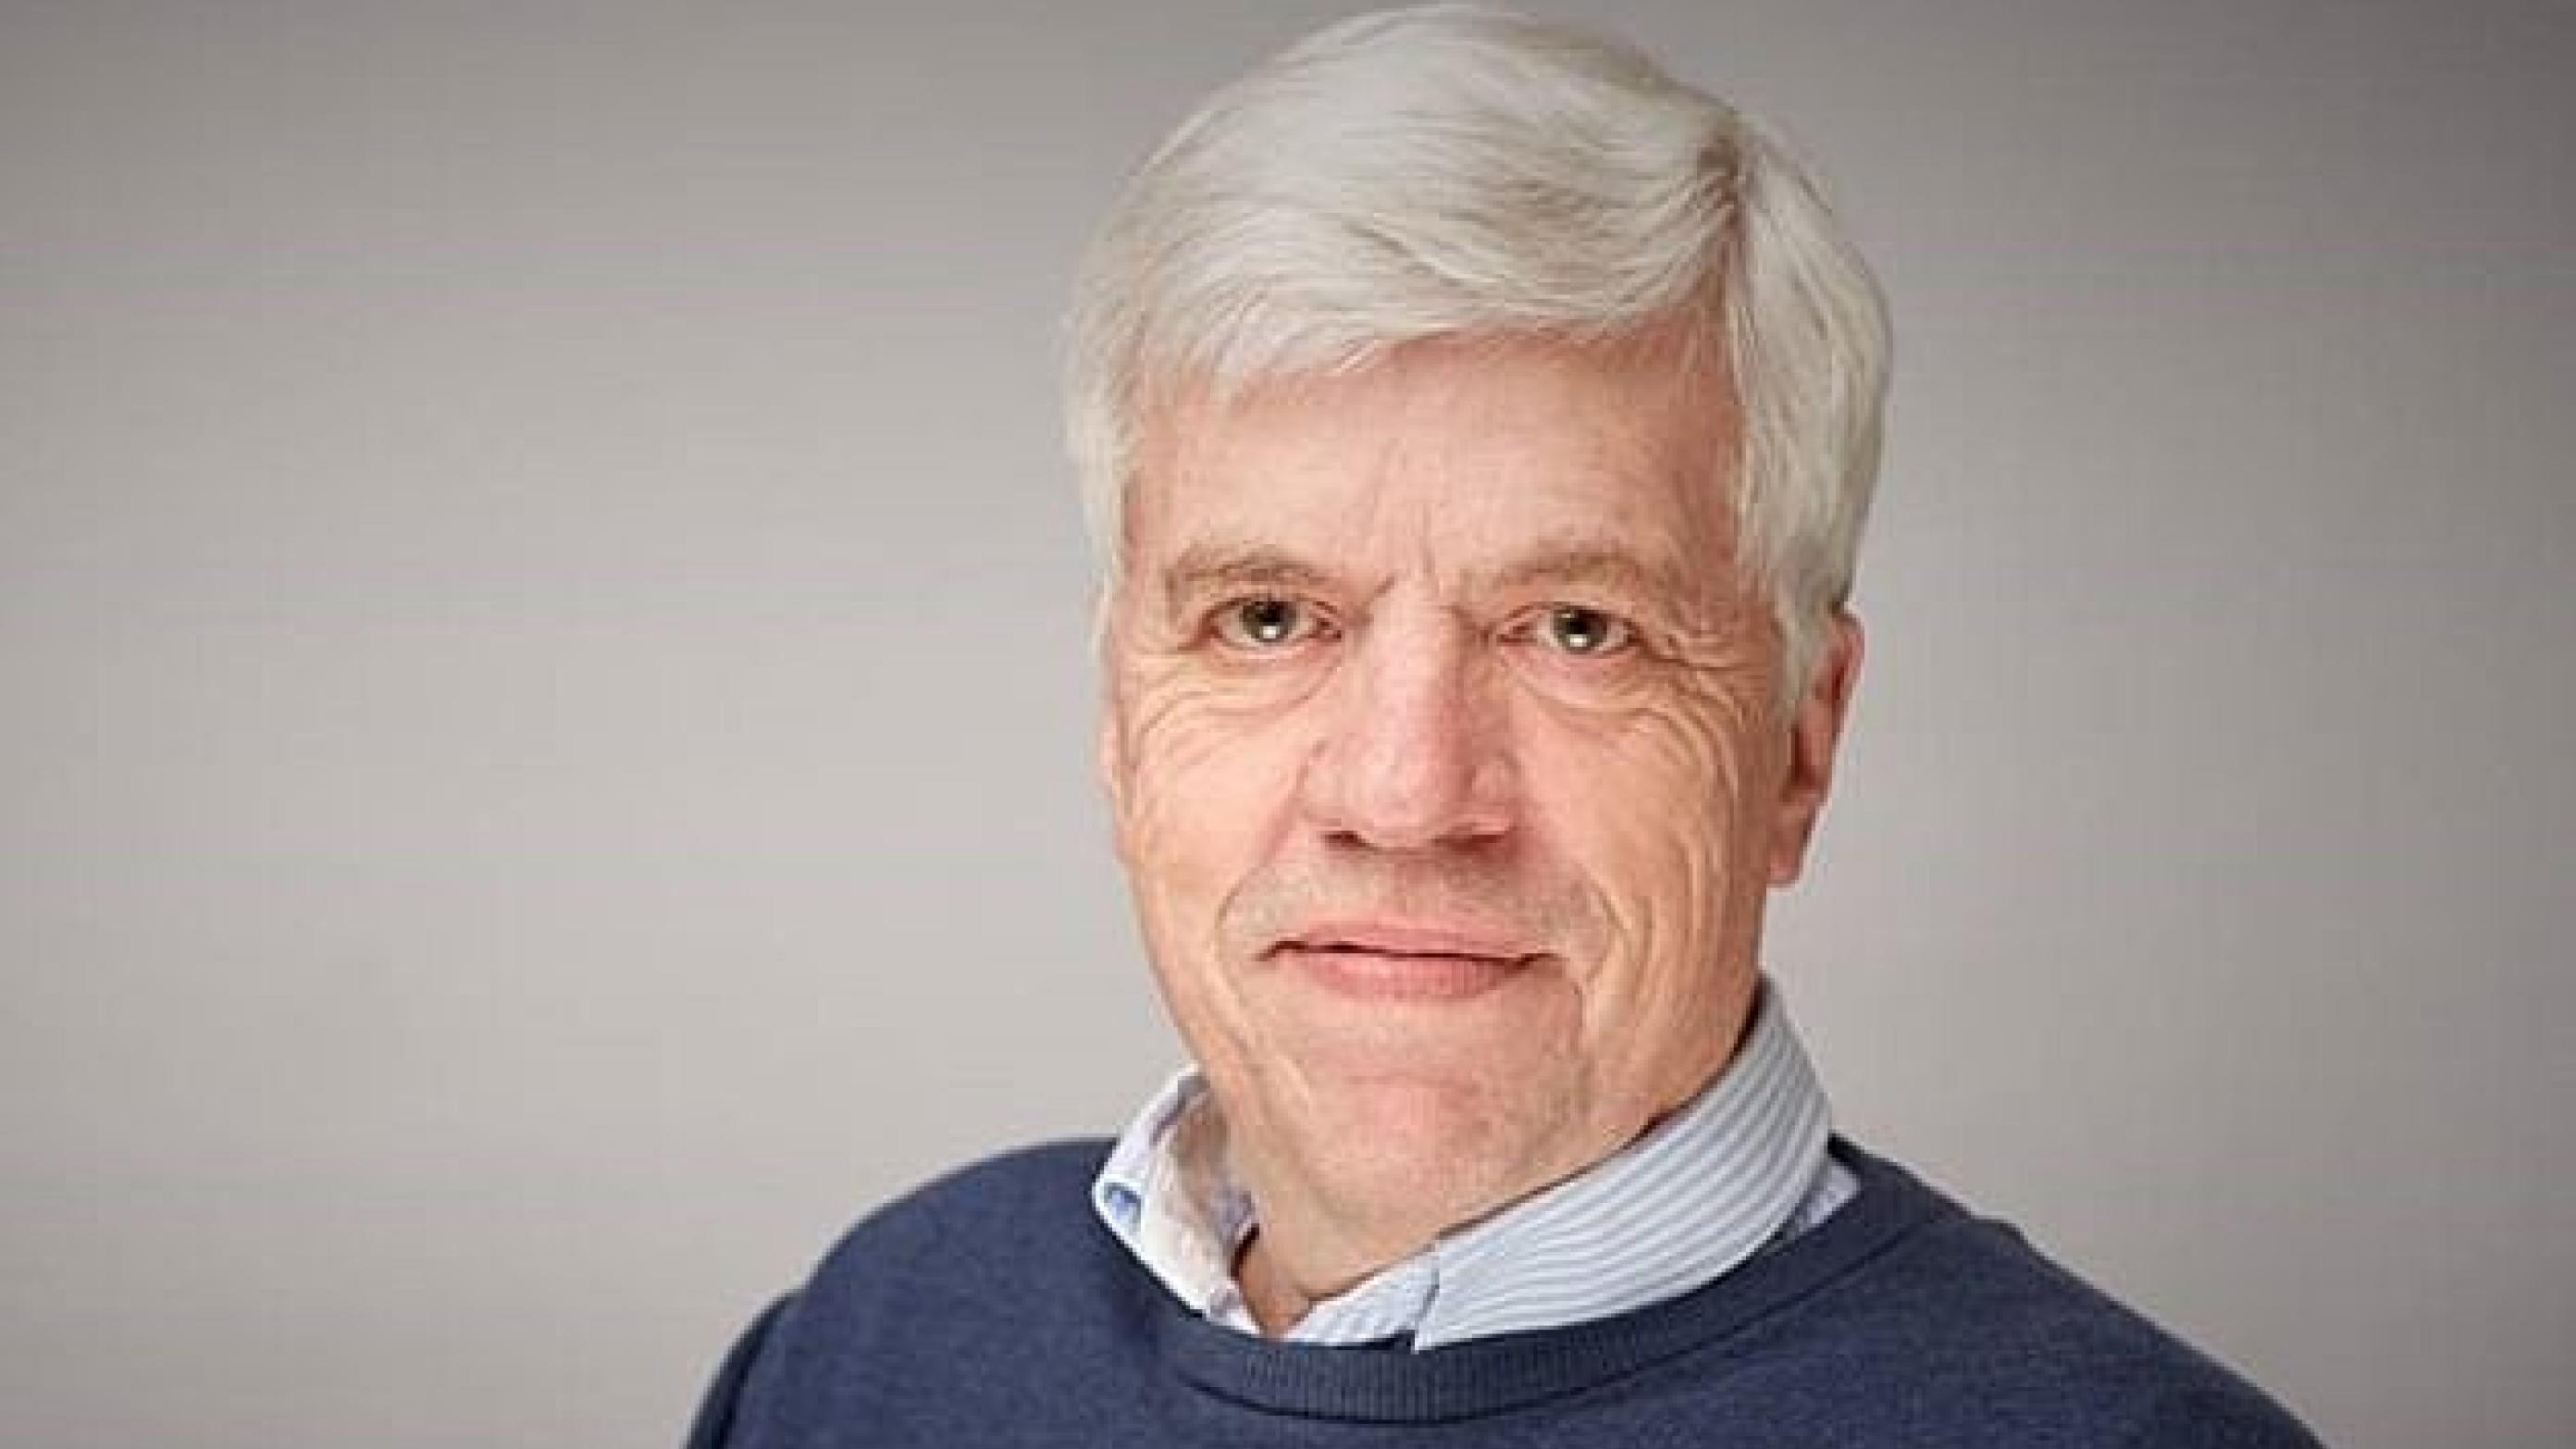 Michael Dupont er næstformand i Lægeforeningen. Foto: laegernetvaervej.dk